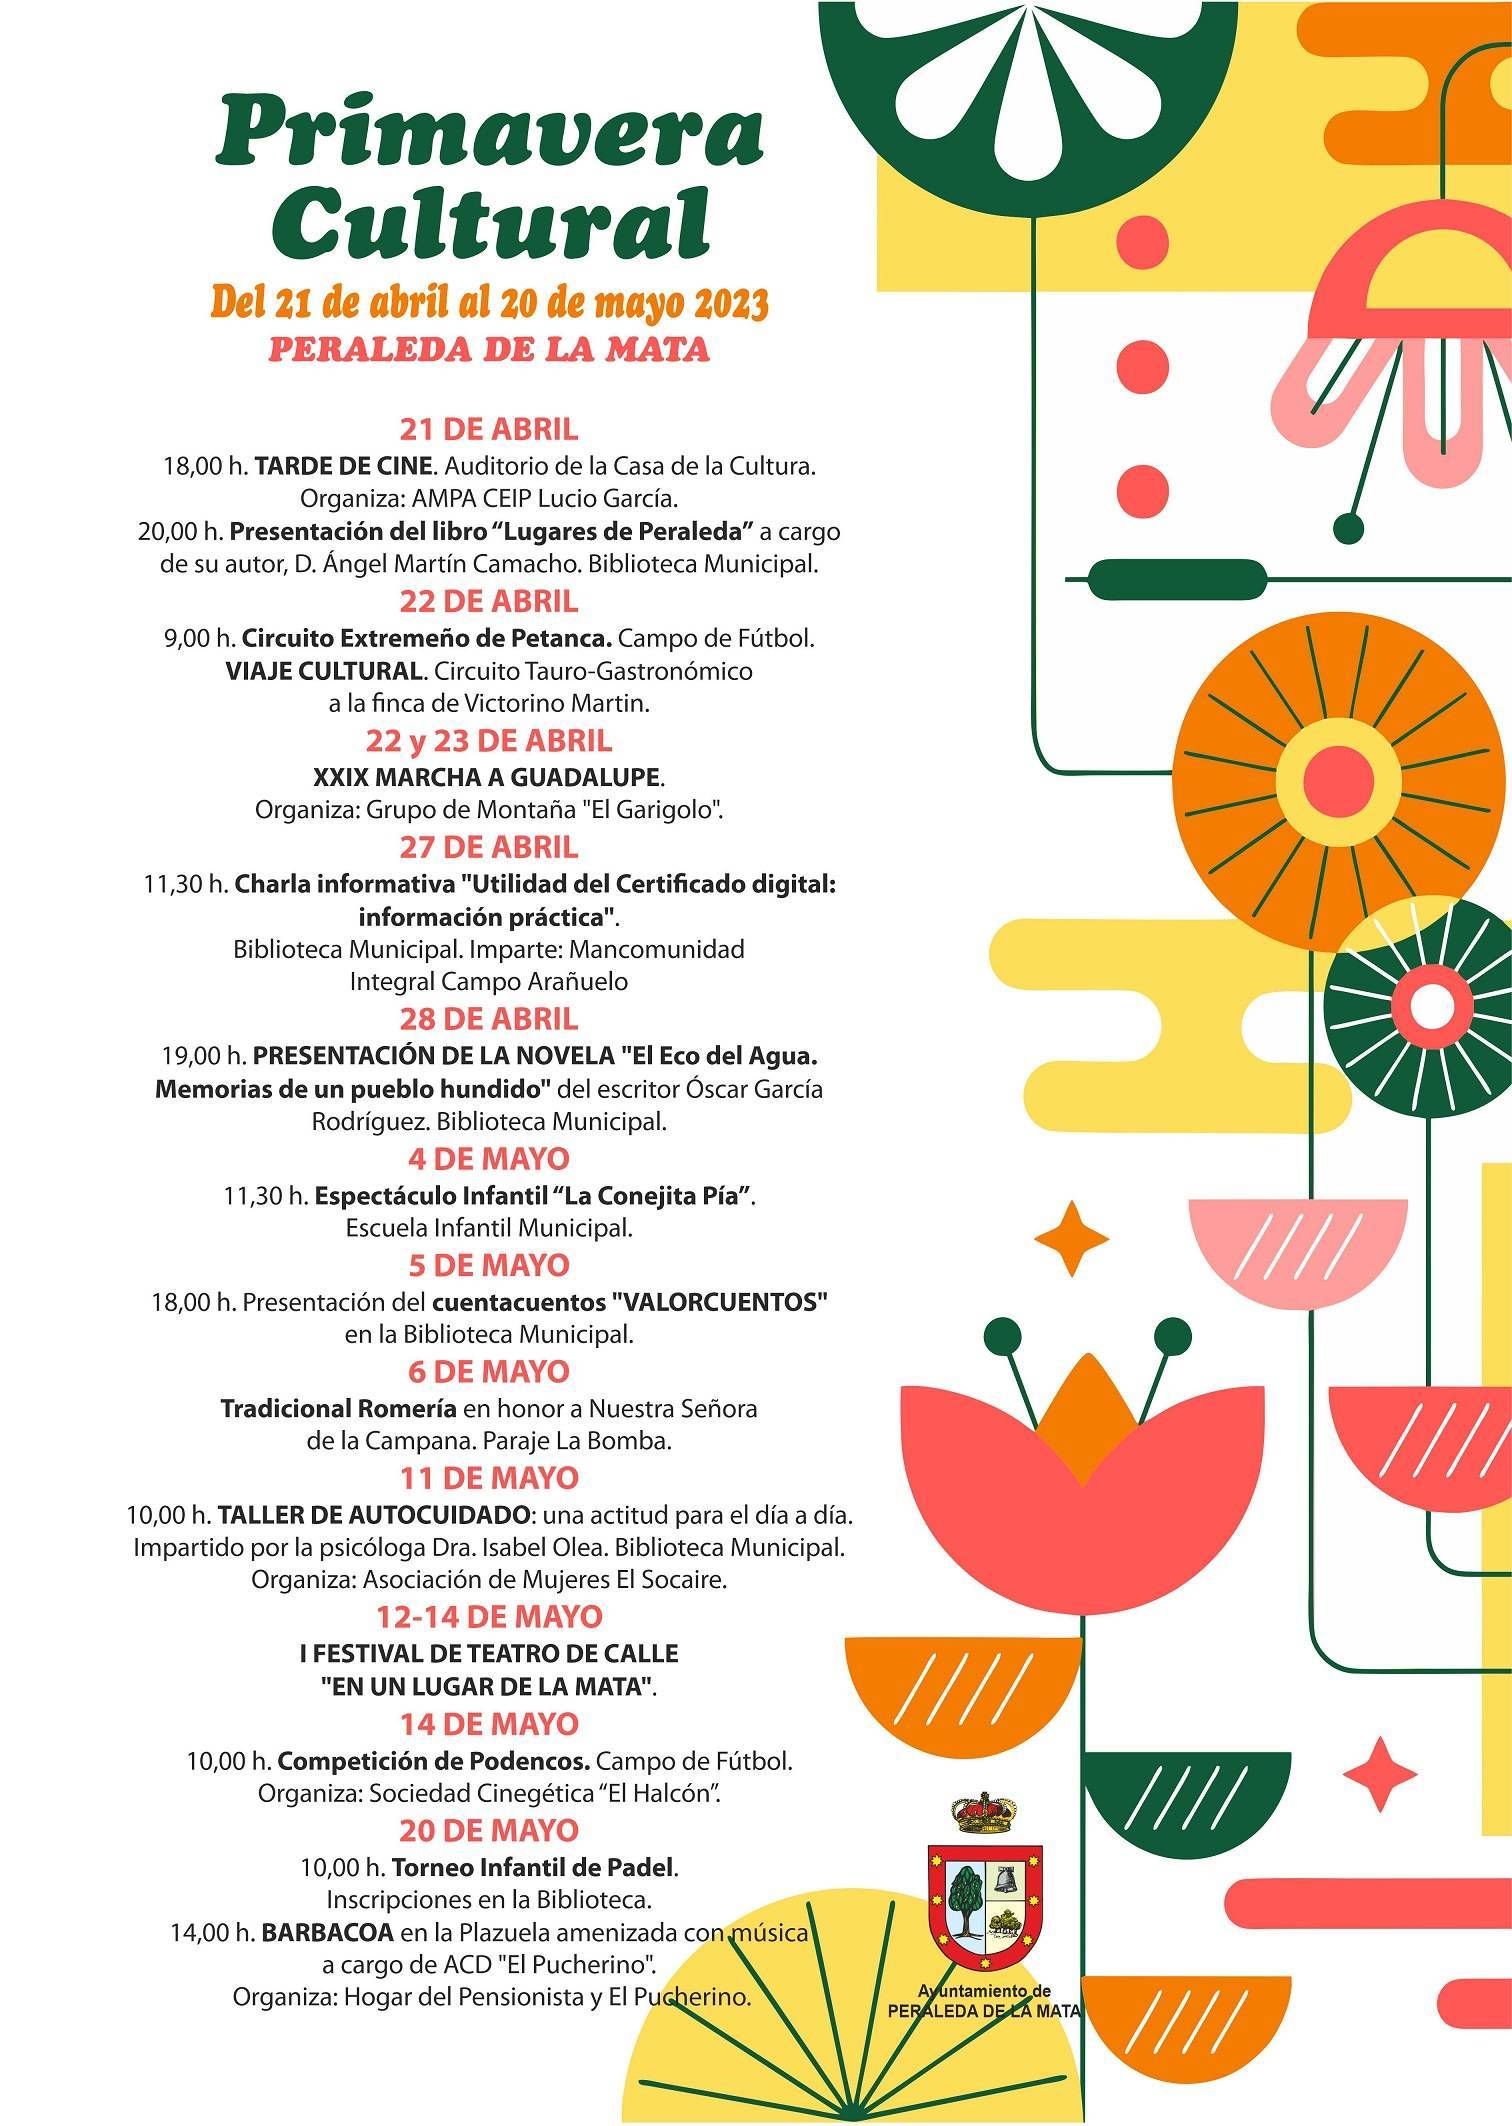 Primavera Cultural (2023) - Peraleda de la Mata (Cáceres)